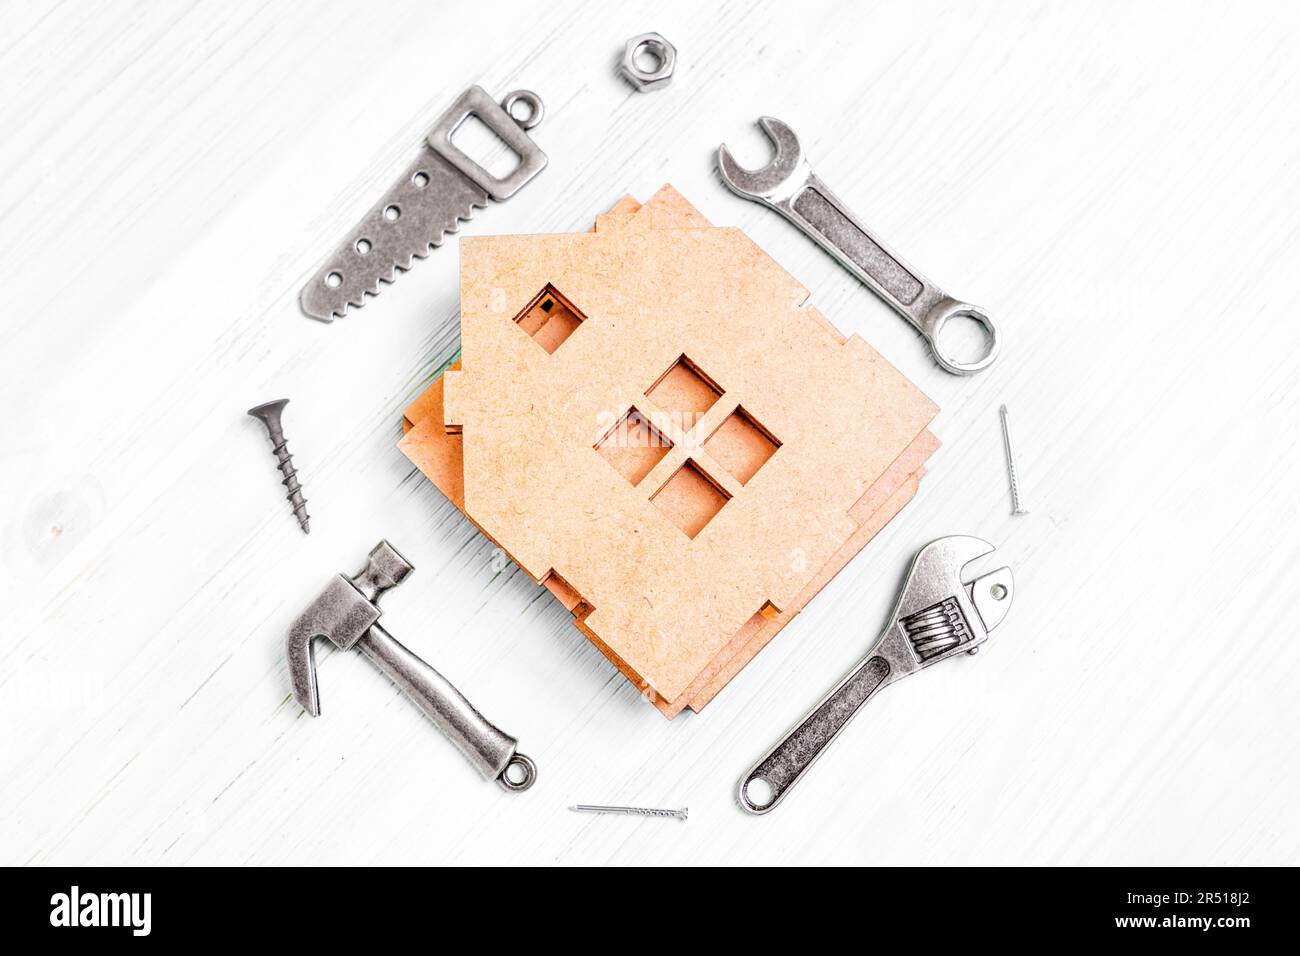 Vue de dessus d'un modèle de maison miniature en bois démontée et de petites répliques en acier de divers outils à main tels qu'un marteau, une scie, des clés, des écrous et des clous Banque D'Images